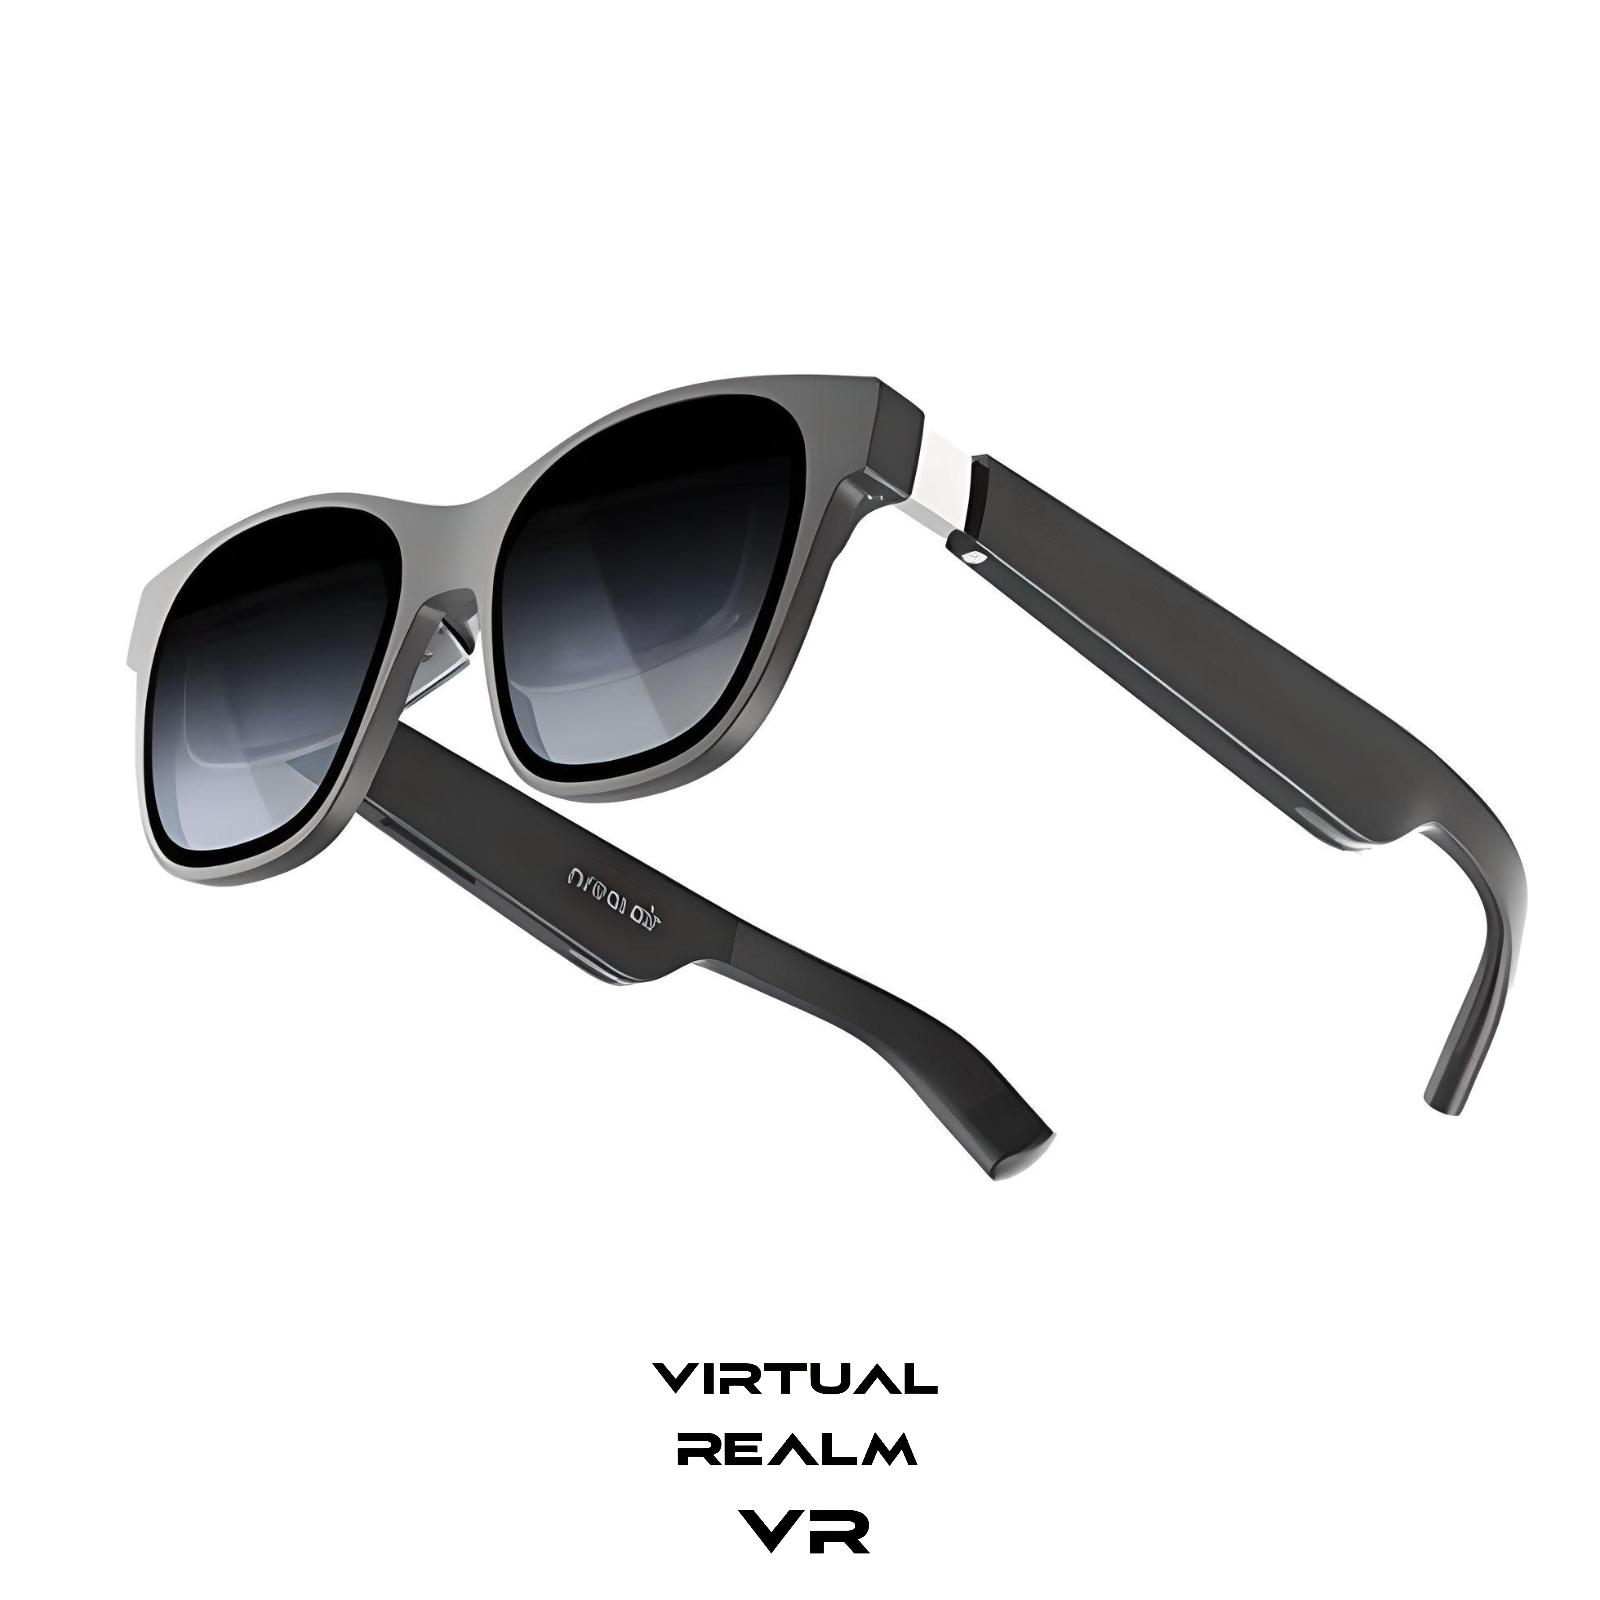 Nreal Air AR Glasses – Virtual Realm VR